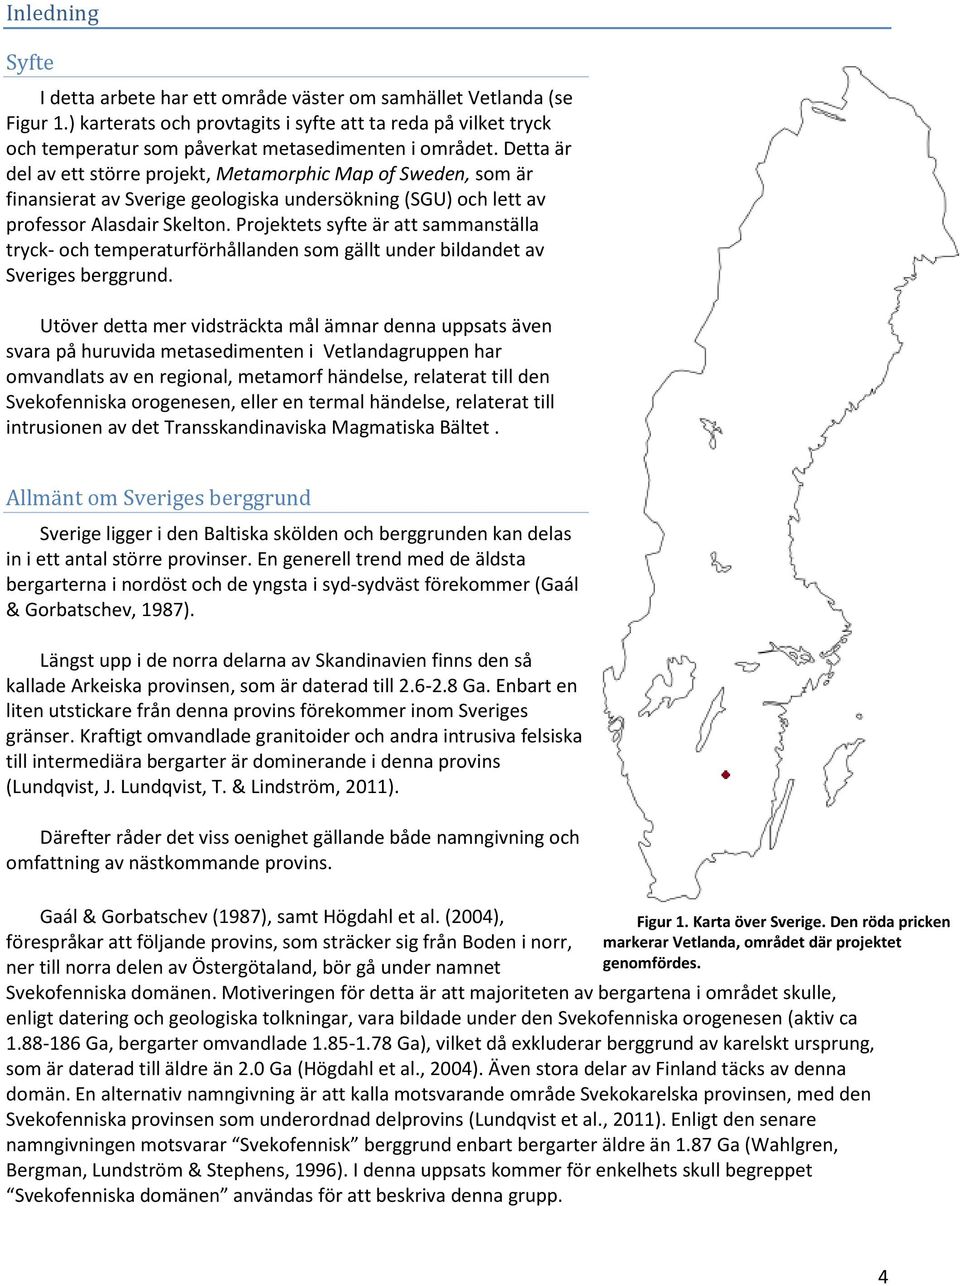 Detta är del av ett större projekt, Metamorphic Map of Sweden, som är finansierat av Sverige geologiska undersökning (SGU) och lett av professor Alasdair Skelton.